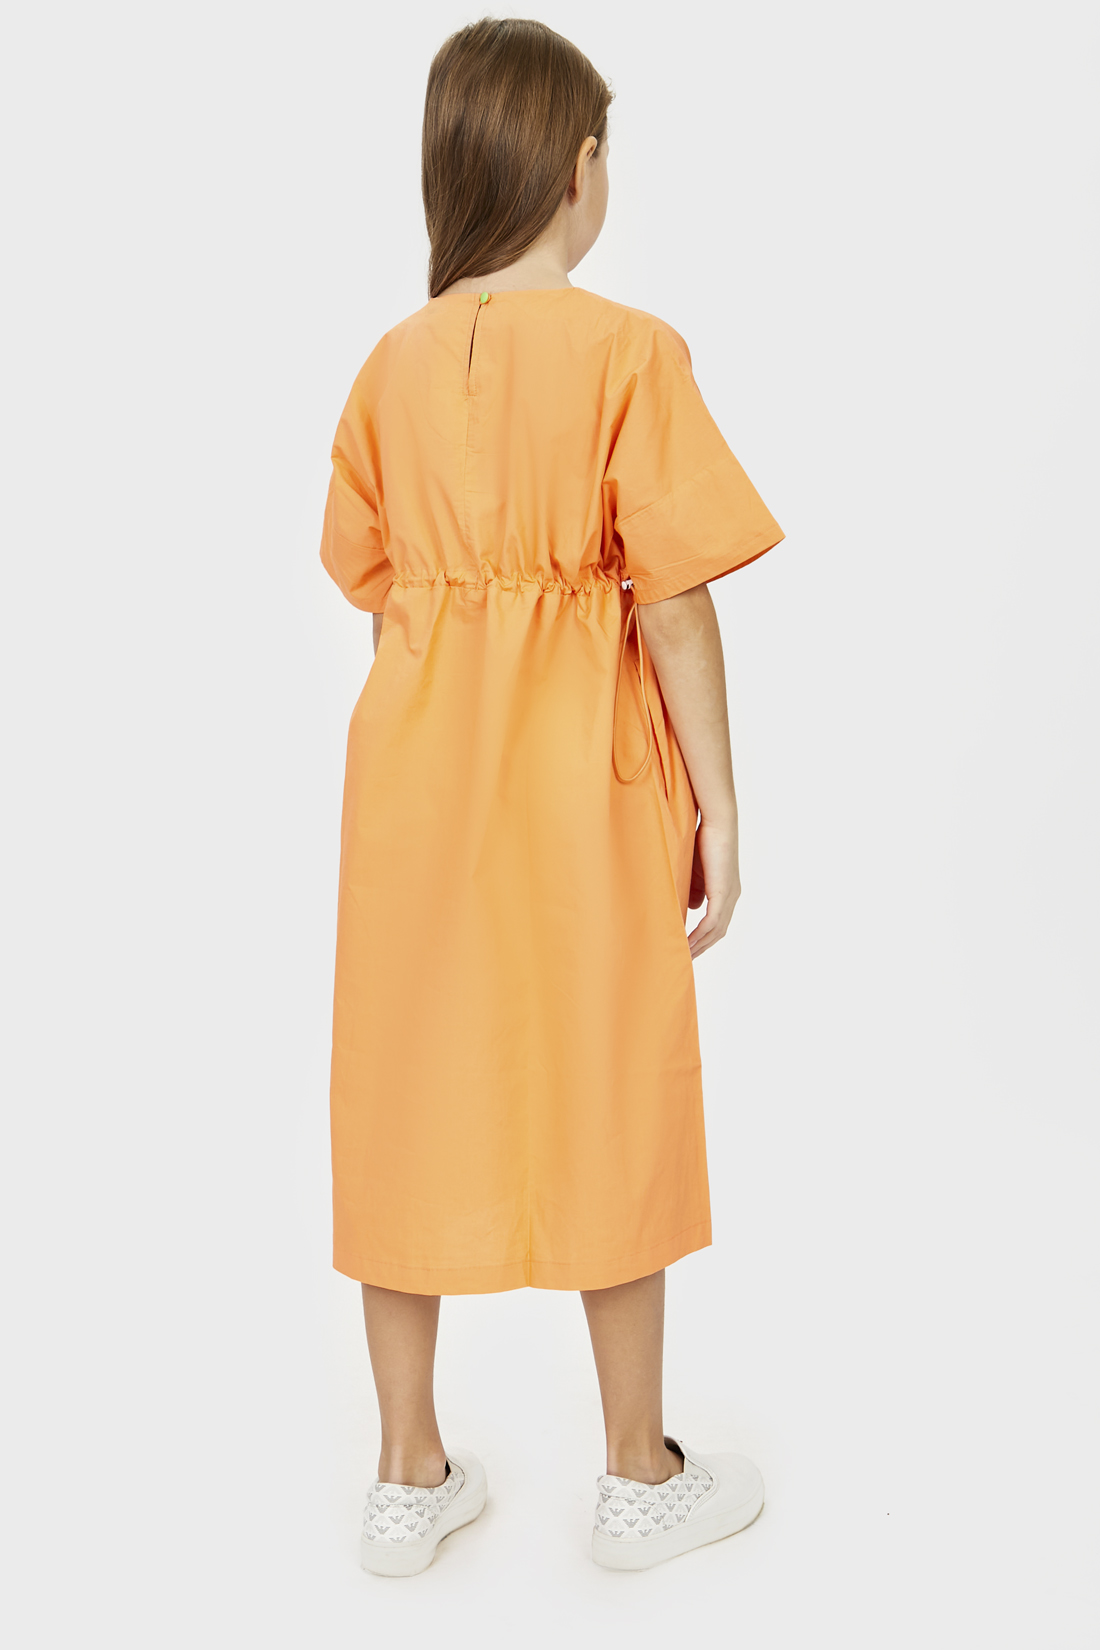 Платье для девочки (арт. baon BK450060), размер 152-158, цвет оранжевый Платье для девочки (арт. baon BK450060) - фото 2